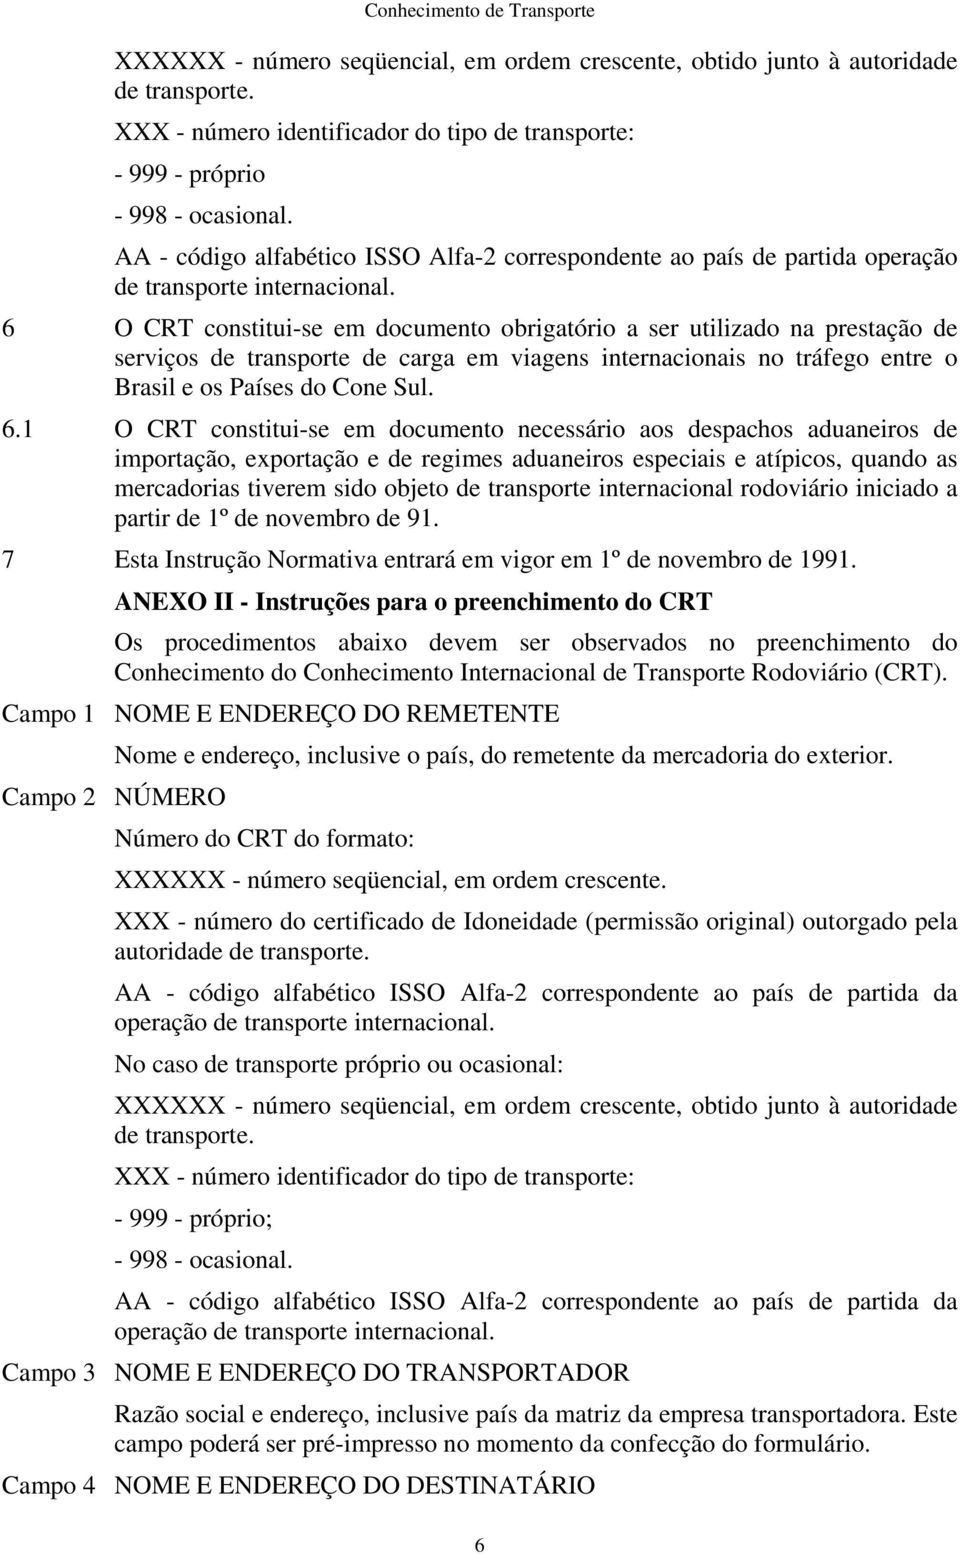 6 O CRT constitui-se em documento obrigatório a ser utilizado na prestação de serviços de transporte de carga em viagens internacionais no tráfego entre o Brasil e os Países do Cone Sul. 6.